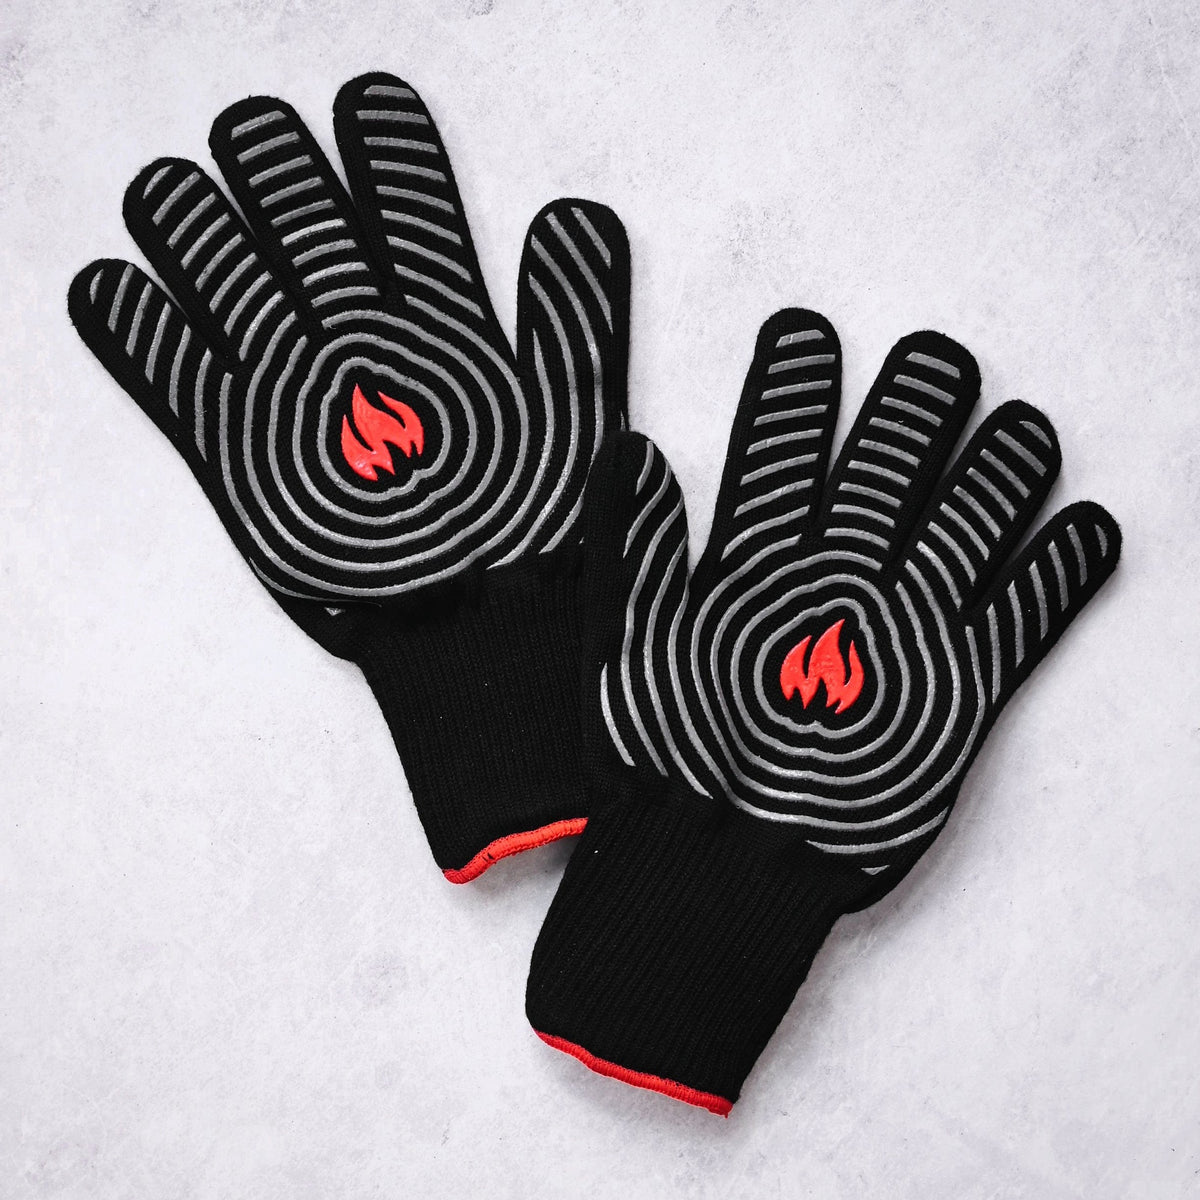 Heat-Resistant Oven Gloves - Amarid Ovana Oven Gloves